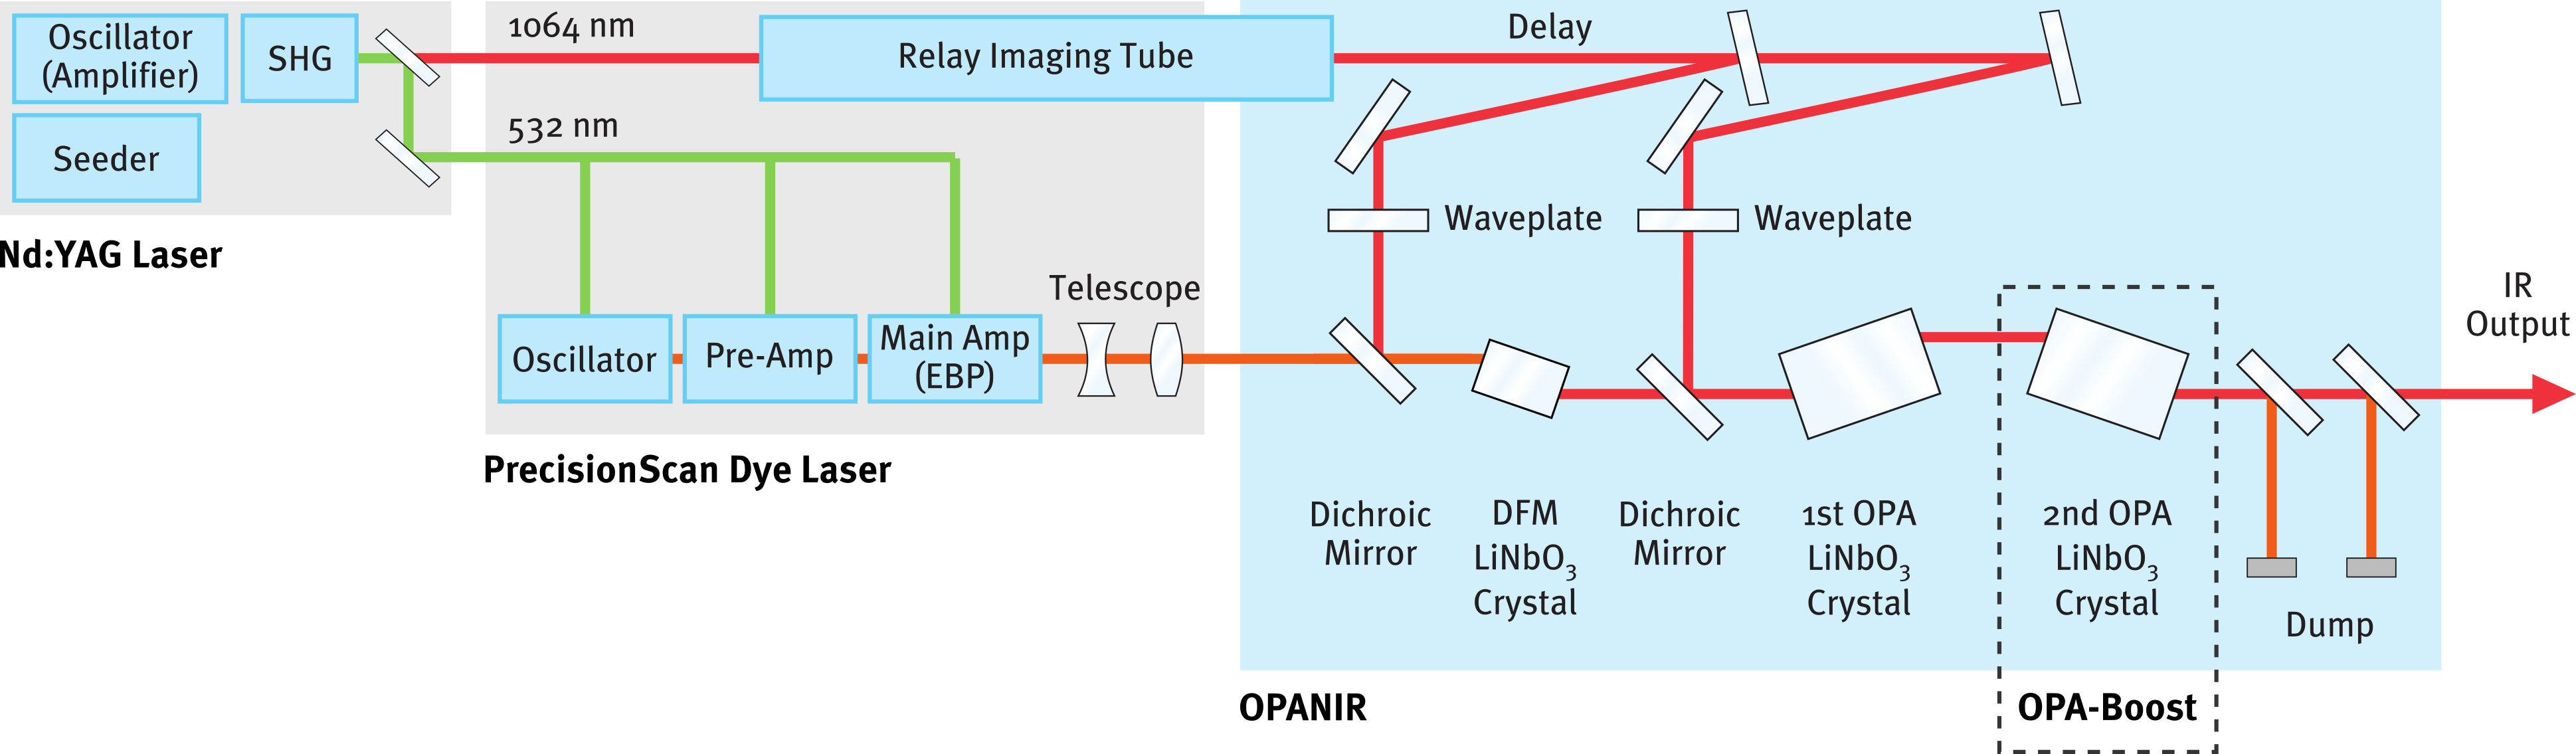 OPANIR - Optical Layout